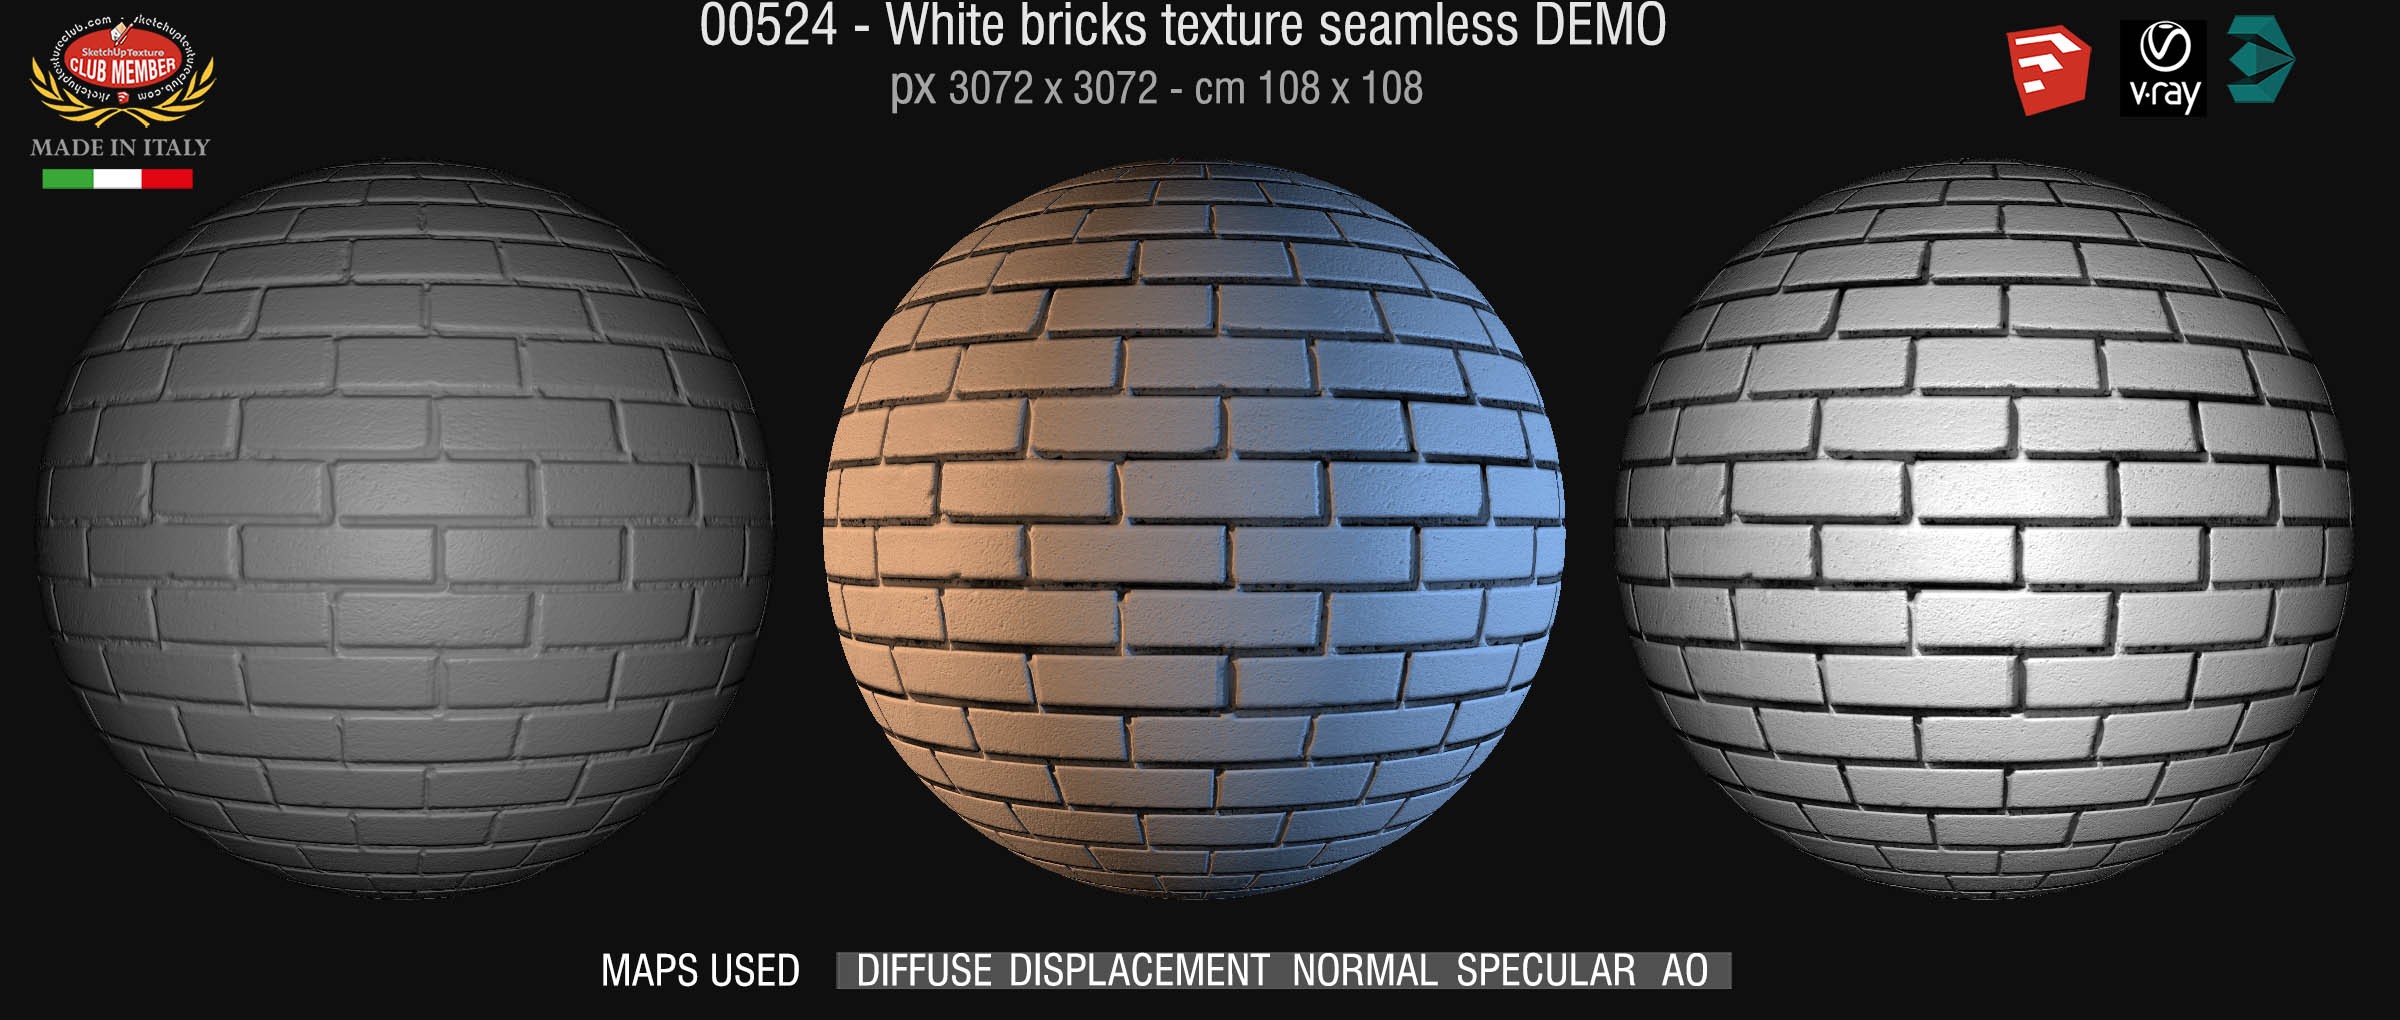 00524 White bricks texture seamless + maps DEMO